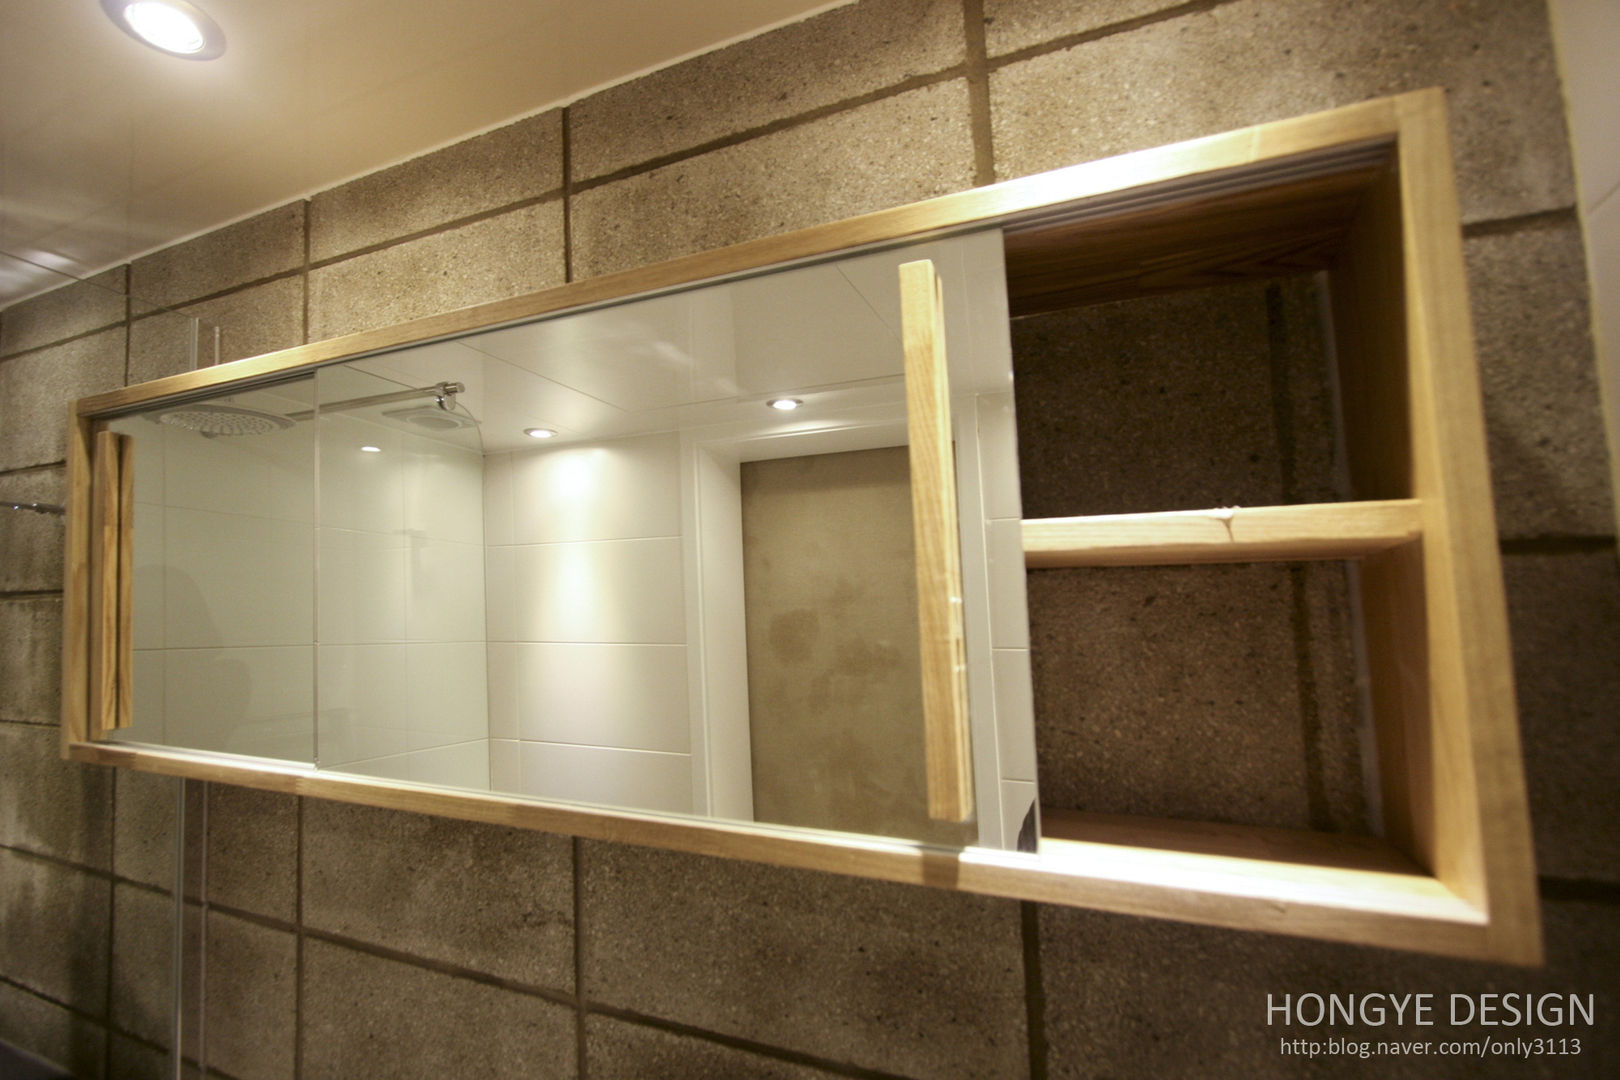 인더스트리얼 느낌의 30평 아파트 인테리어, 홍예디자인 홍예디자인 Industrial style bathrooms